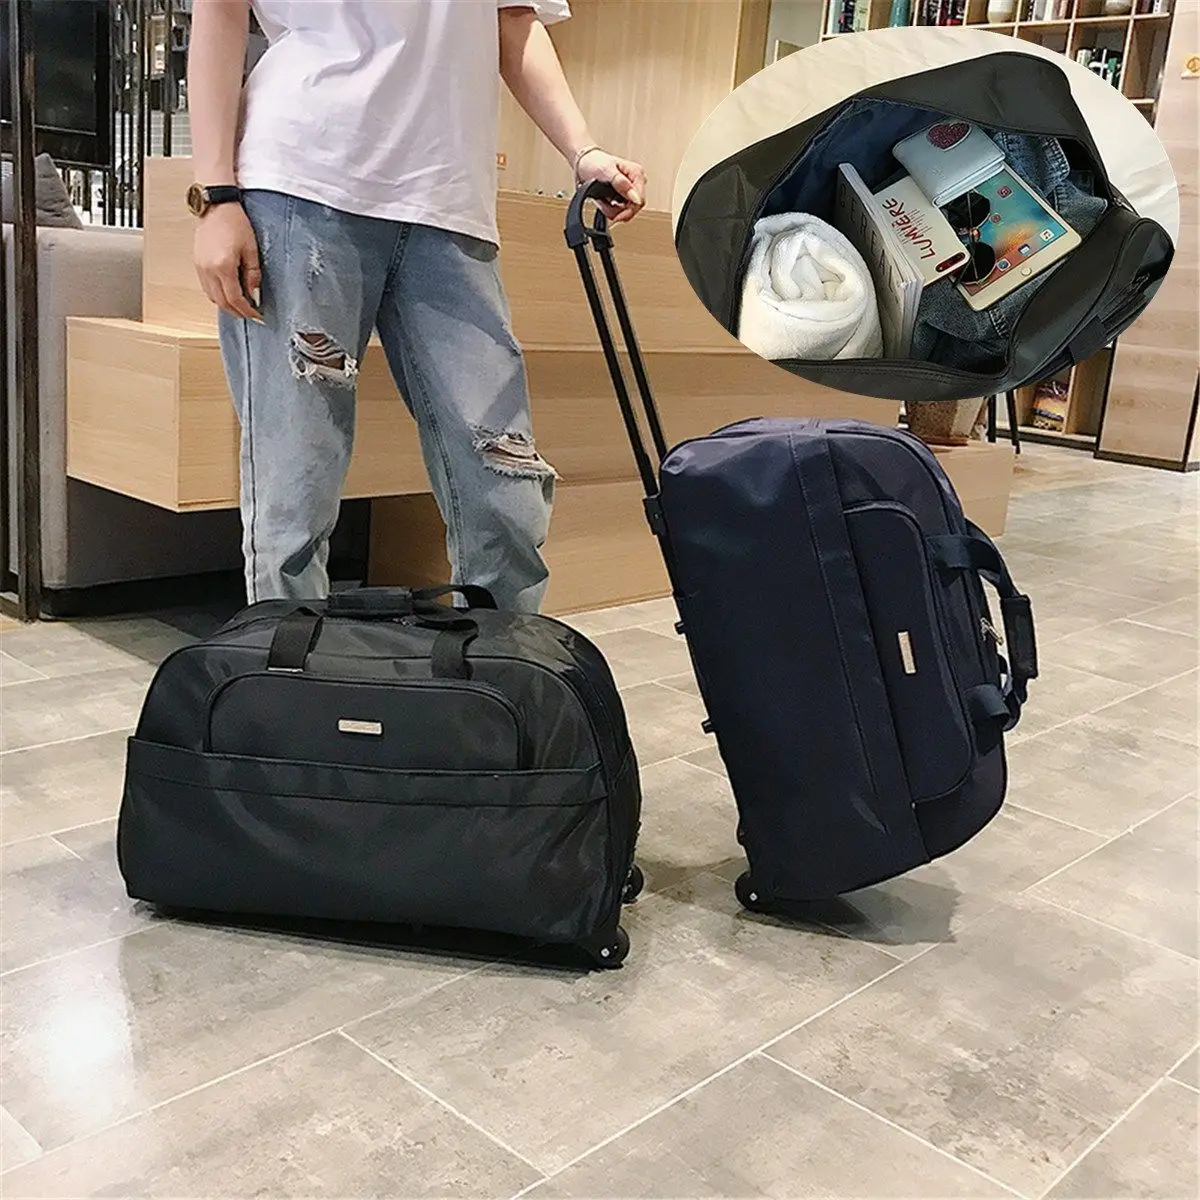 Новинка 2021, дорожная сумка-тележка для багажа с колесами, чемодан на колесиках, вместительные мужские сумки для путешествий, ручная сумка, 4 ... от AliExpress RU&CIS NEW